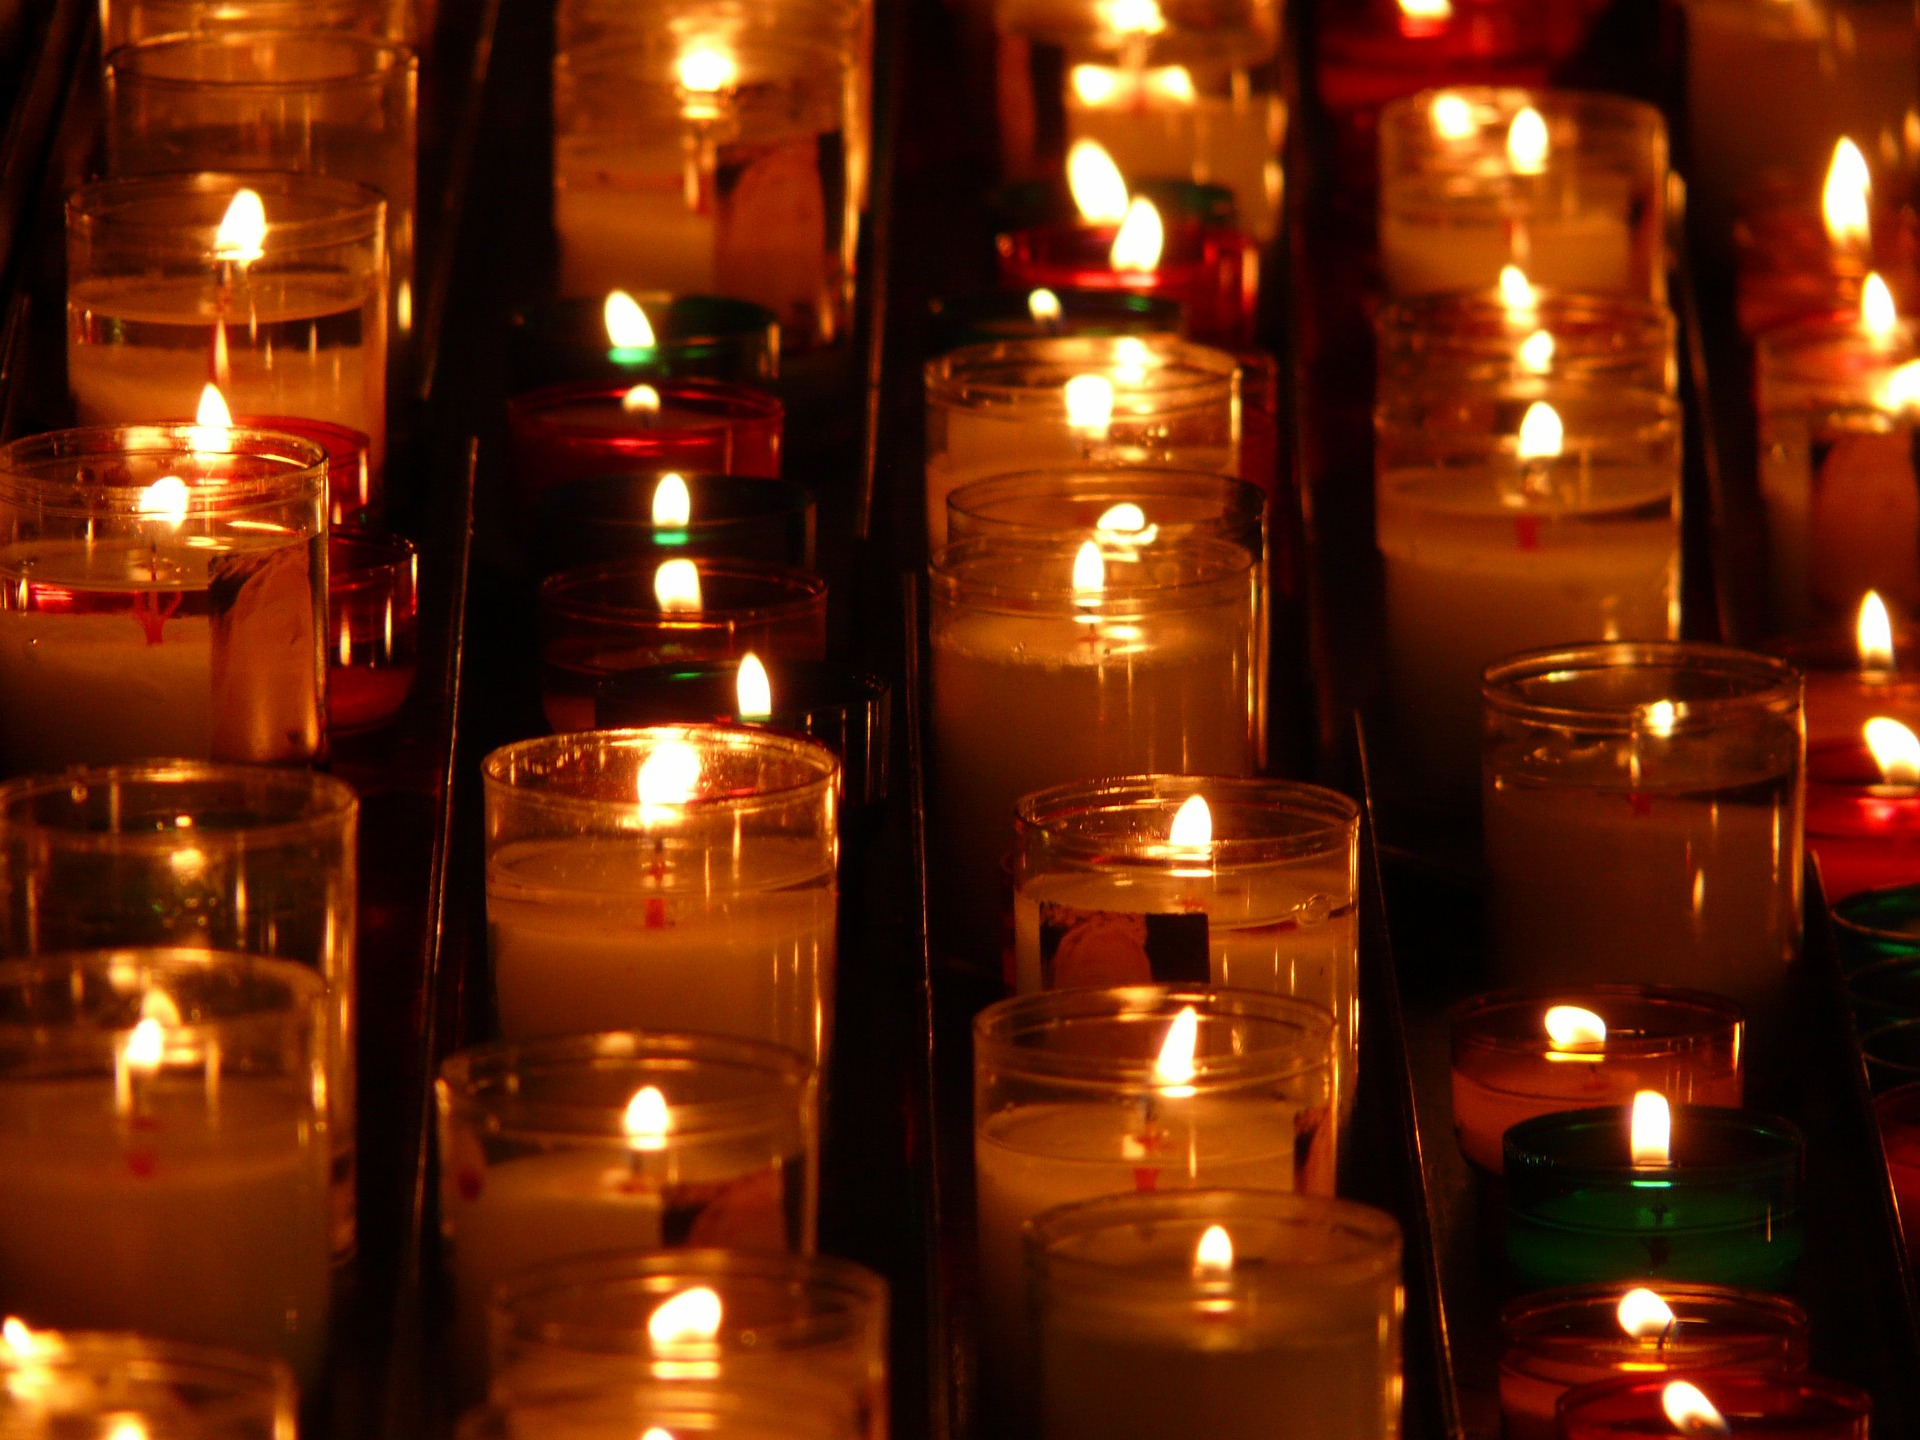 Memorial candles